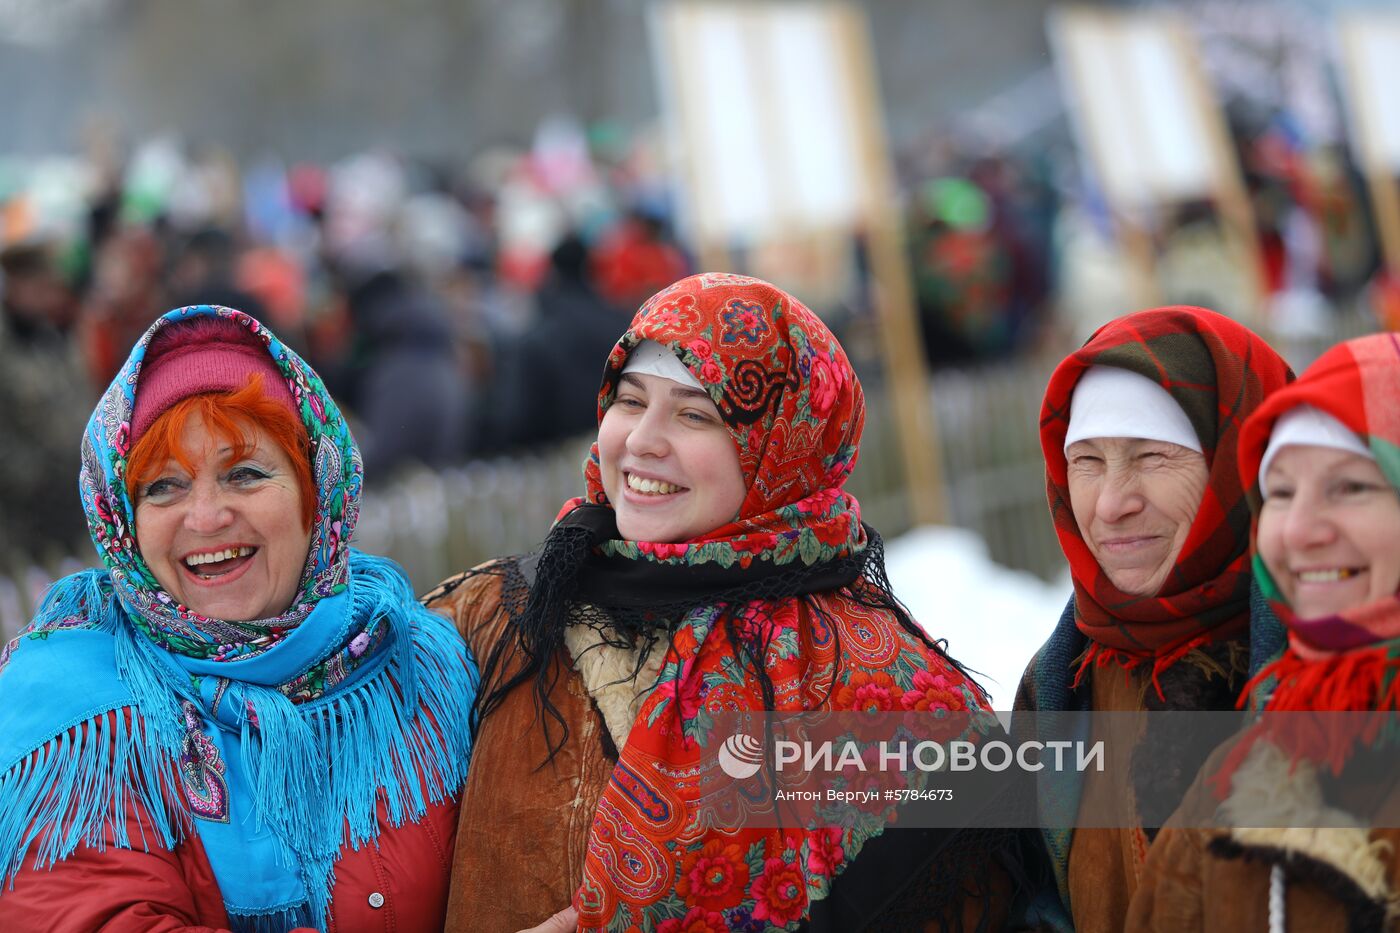 Фестиваль народной культуры "Маланья Зимняя" в Белгородской области 